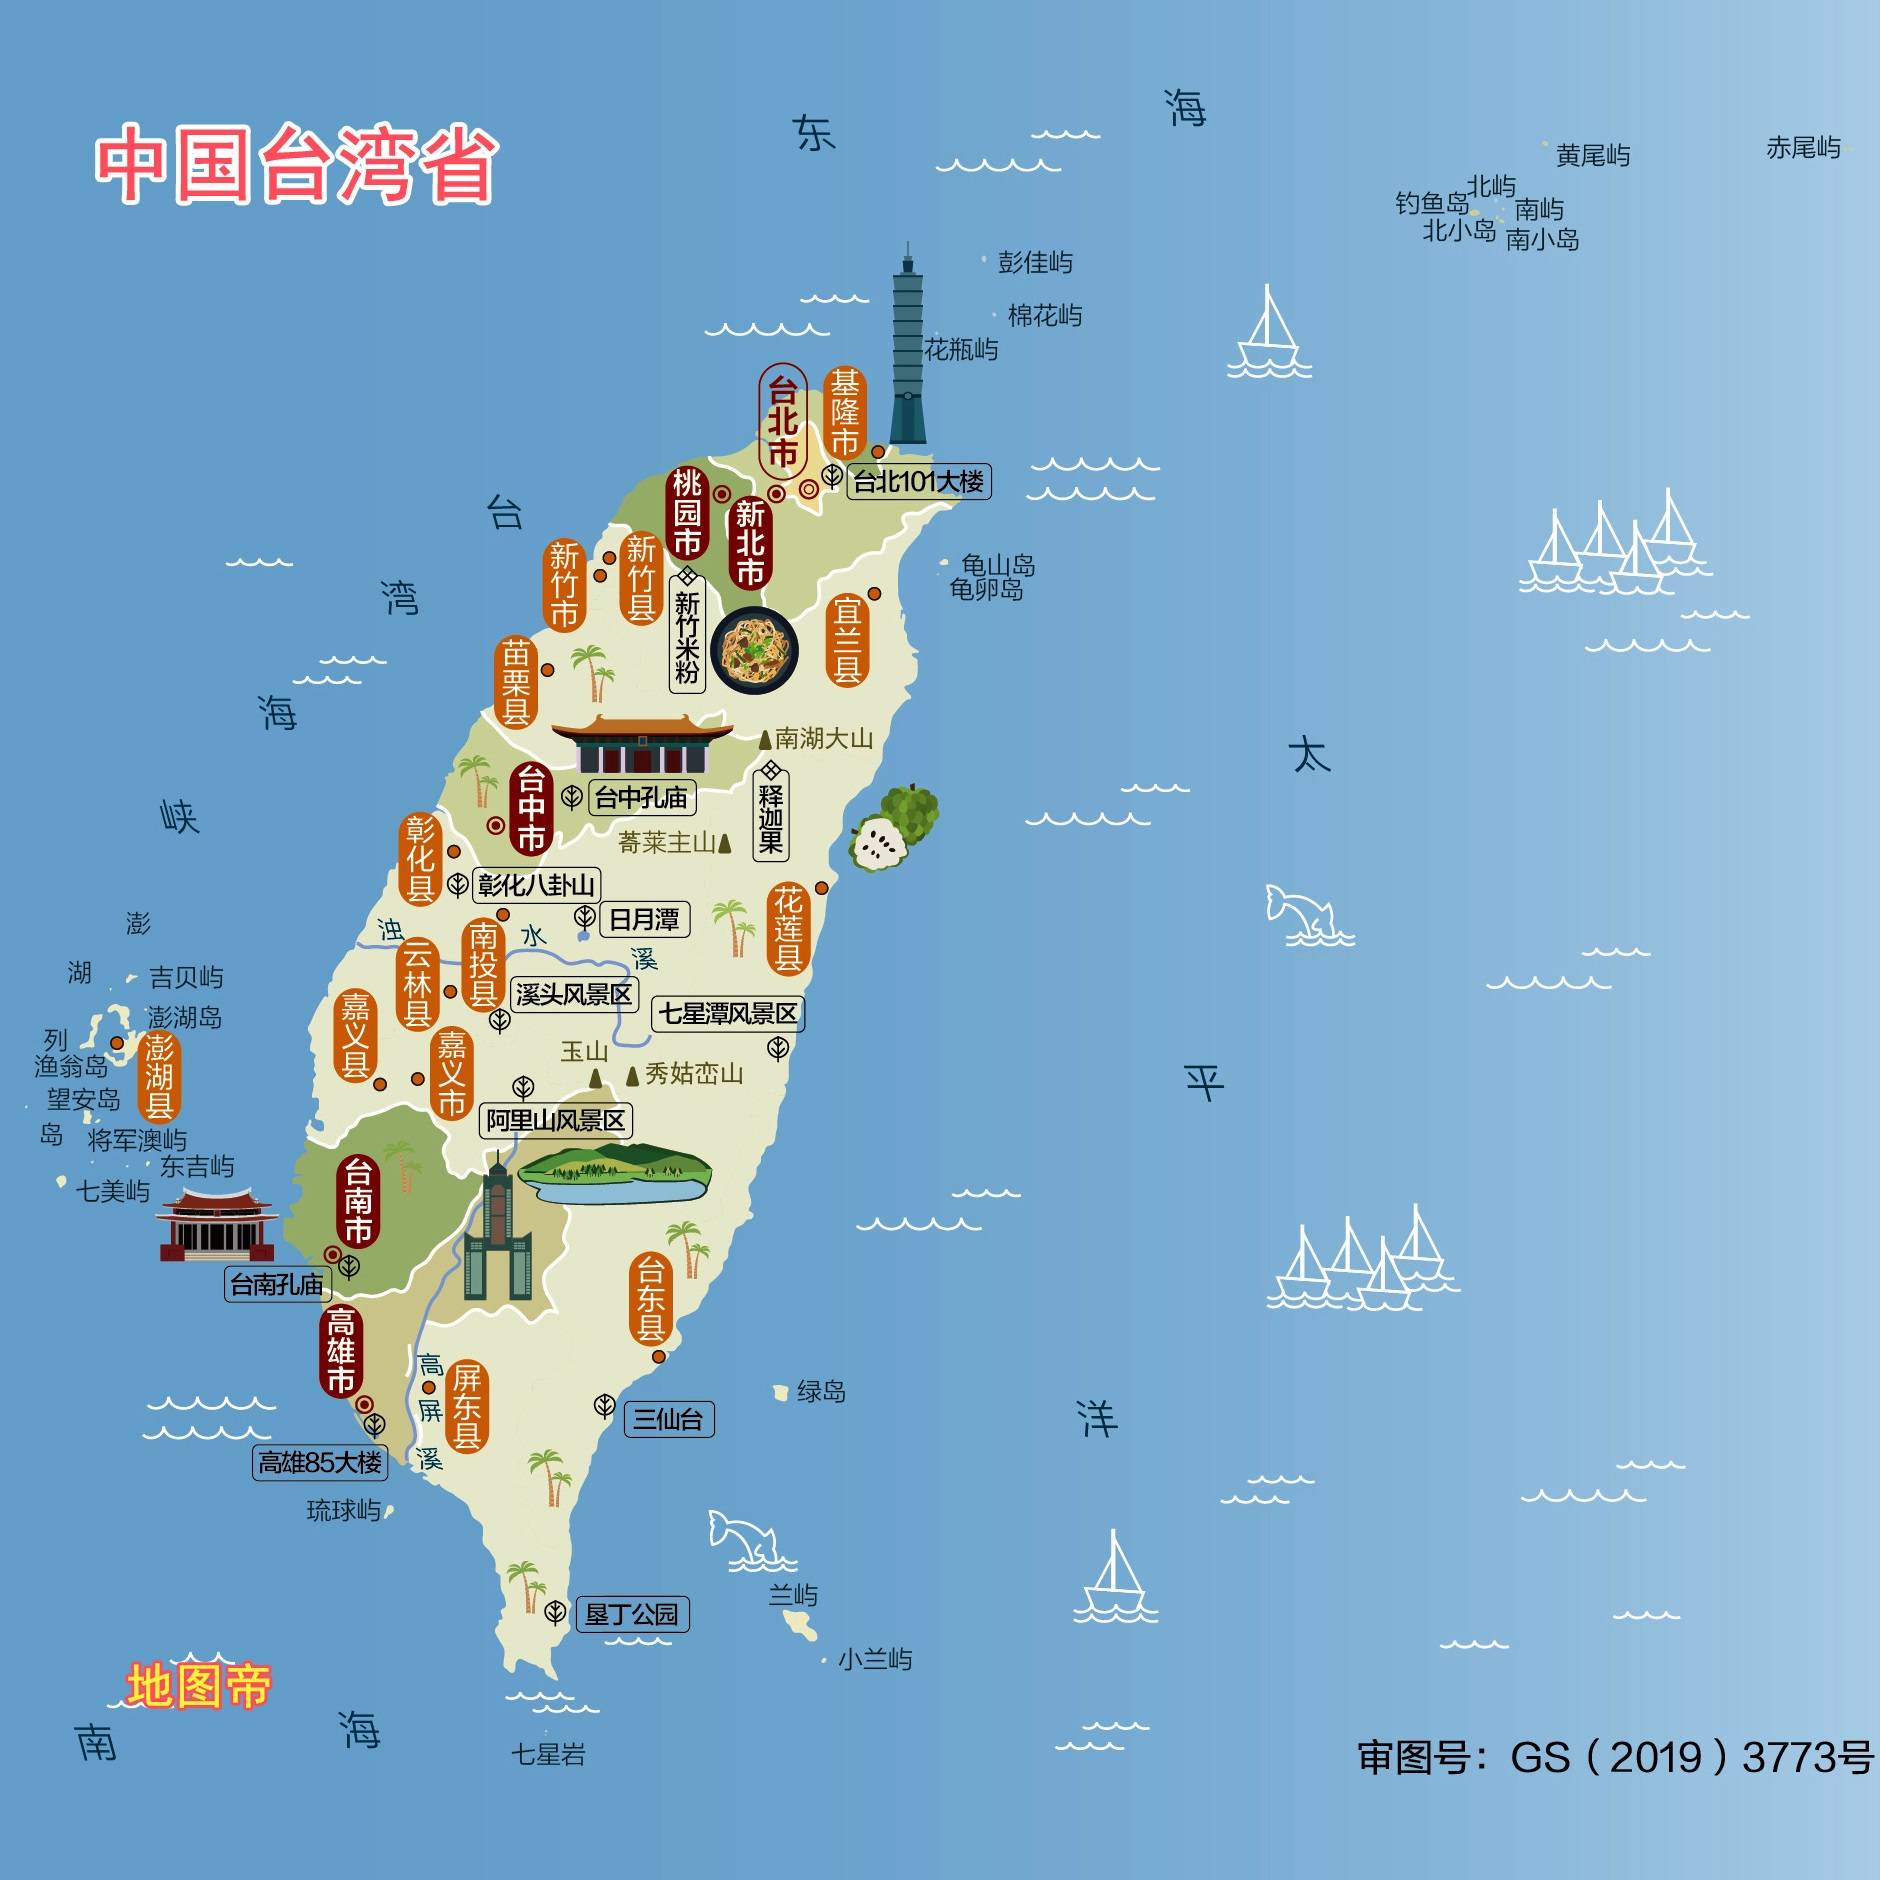 原创台湾岛海拔有多高?日本韩国越南菲律宾都要仰望